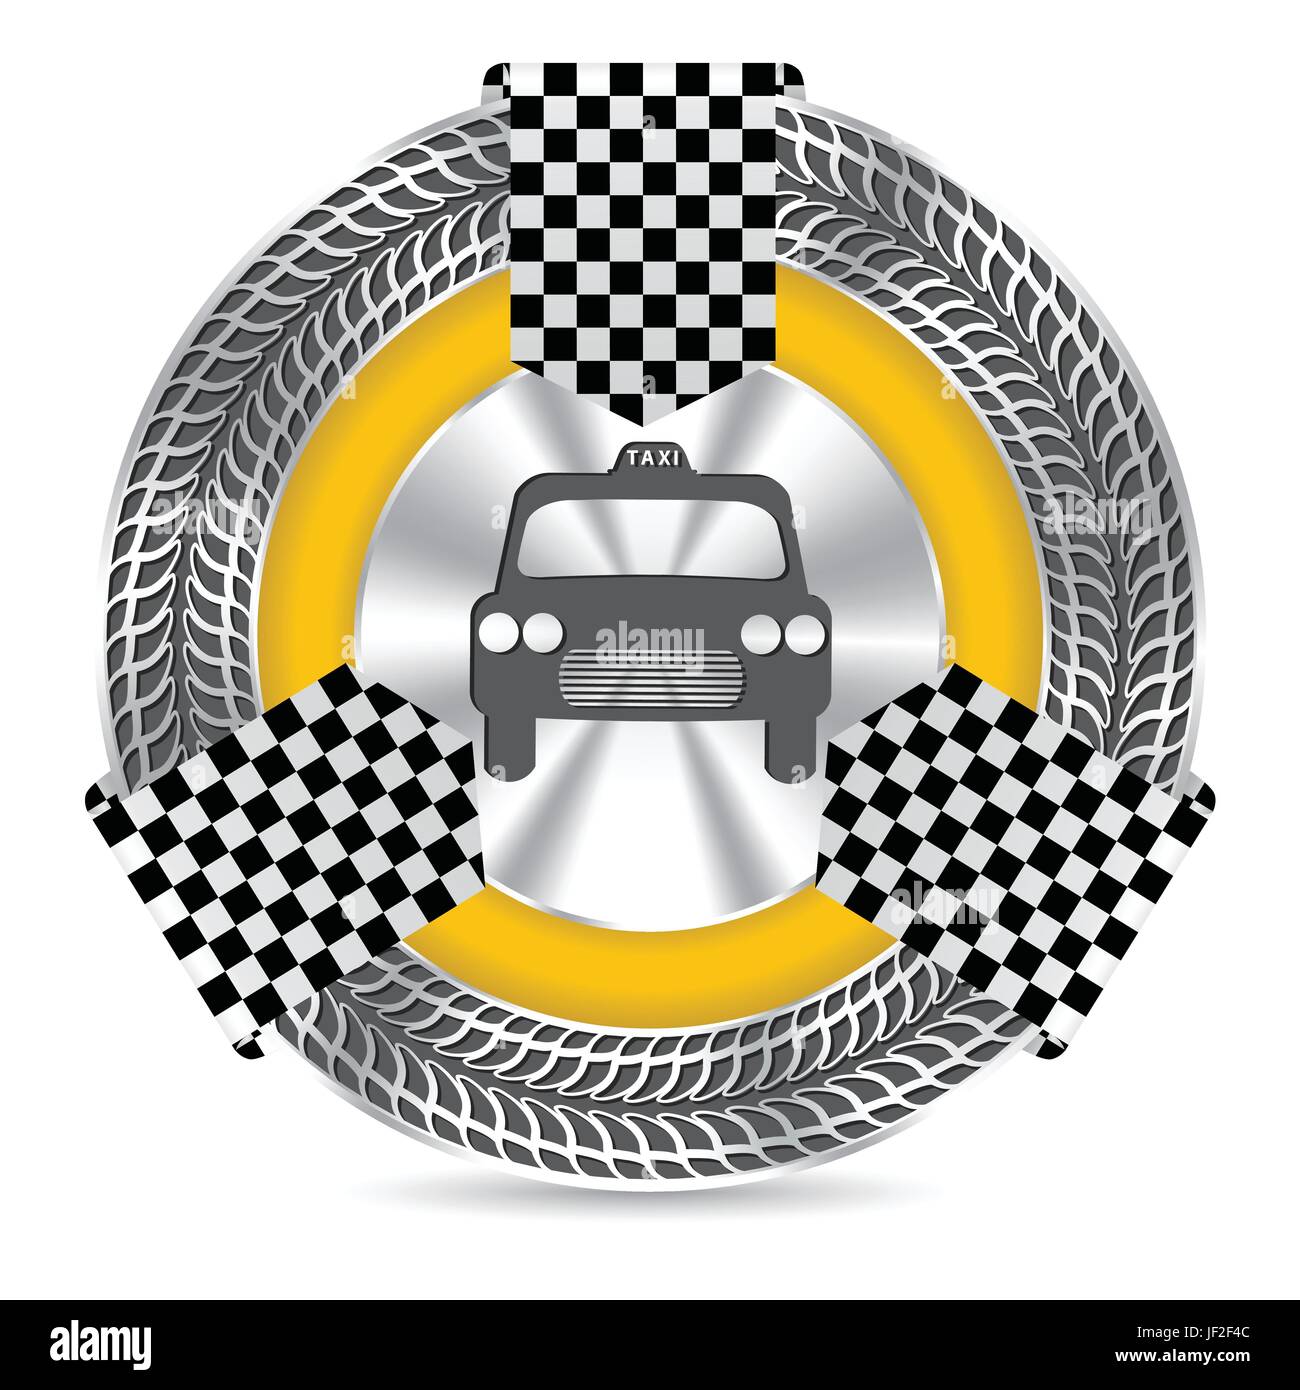 taxi, metallic, icon, badge, checkered, logo, pictogram, symbol, pictograph, Stock Vector